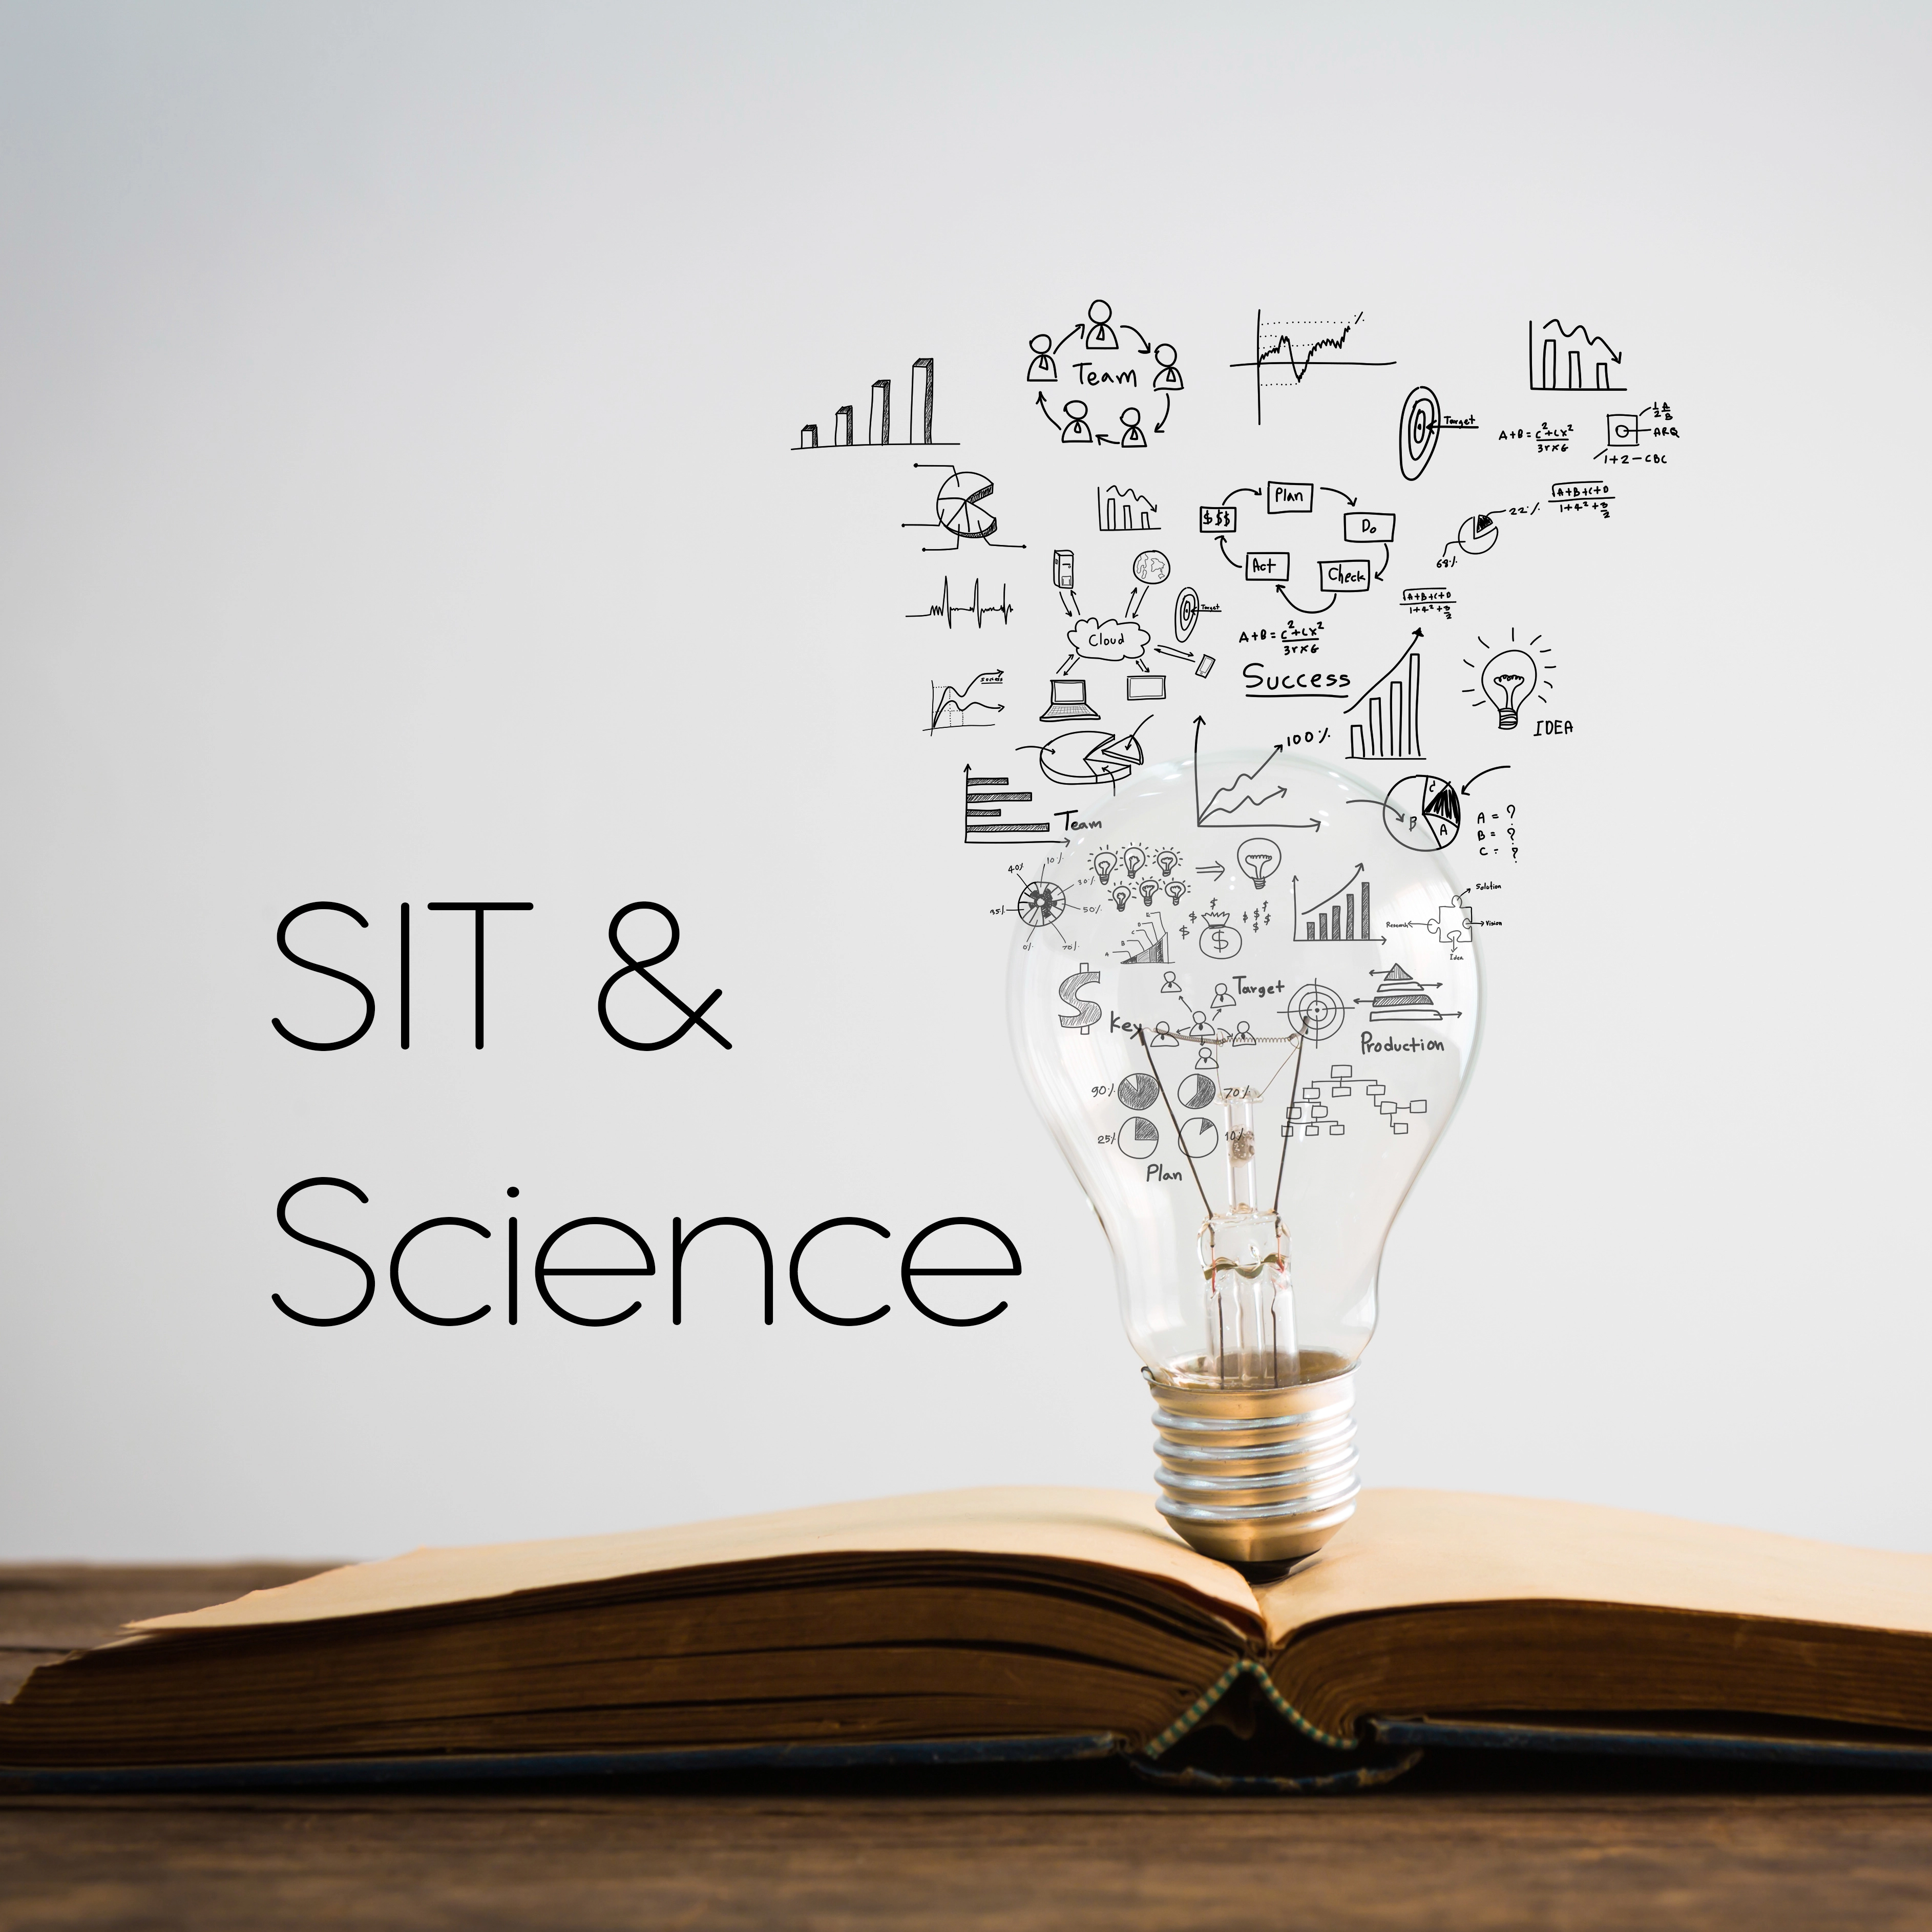 مقالات معتبر علمی دربارۀ SIT